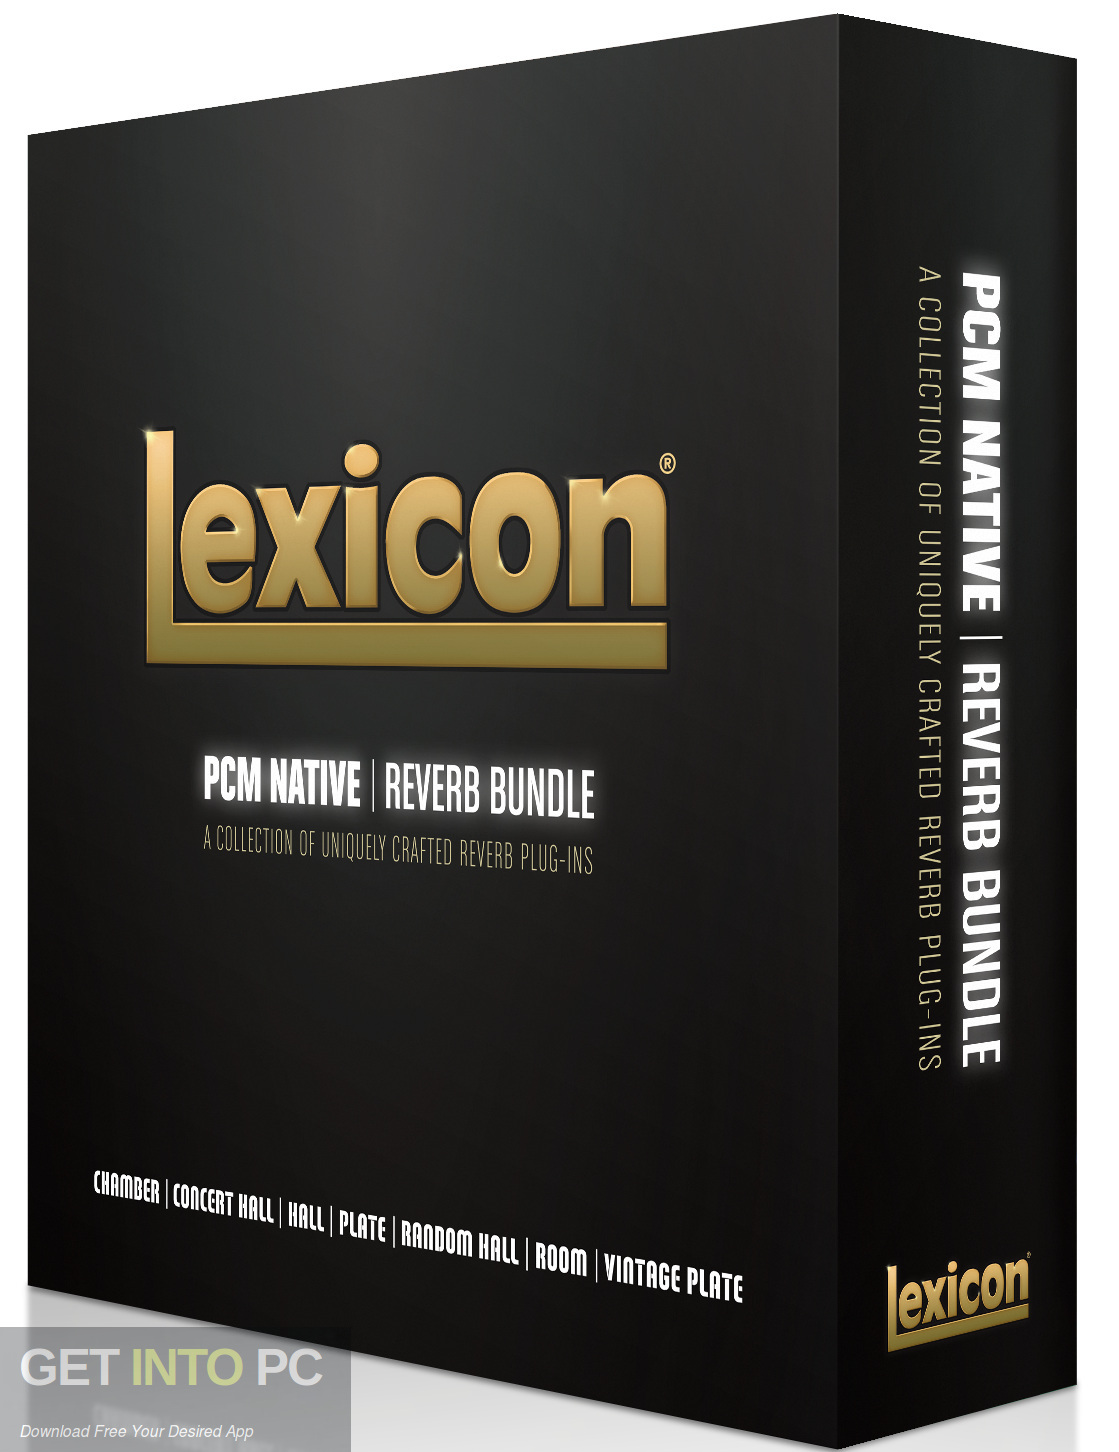 Lexicon Reverb Bundle VST Free Download-GetintoPC.com